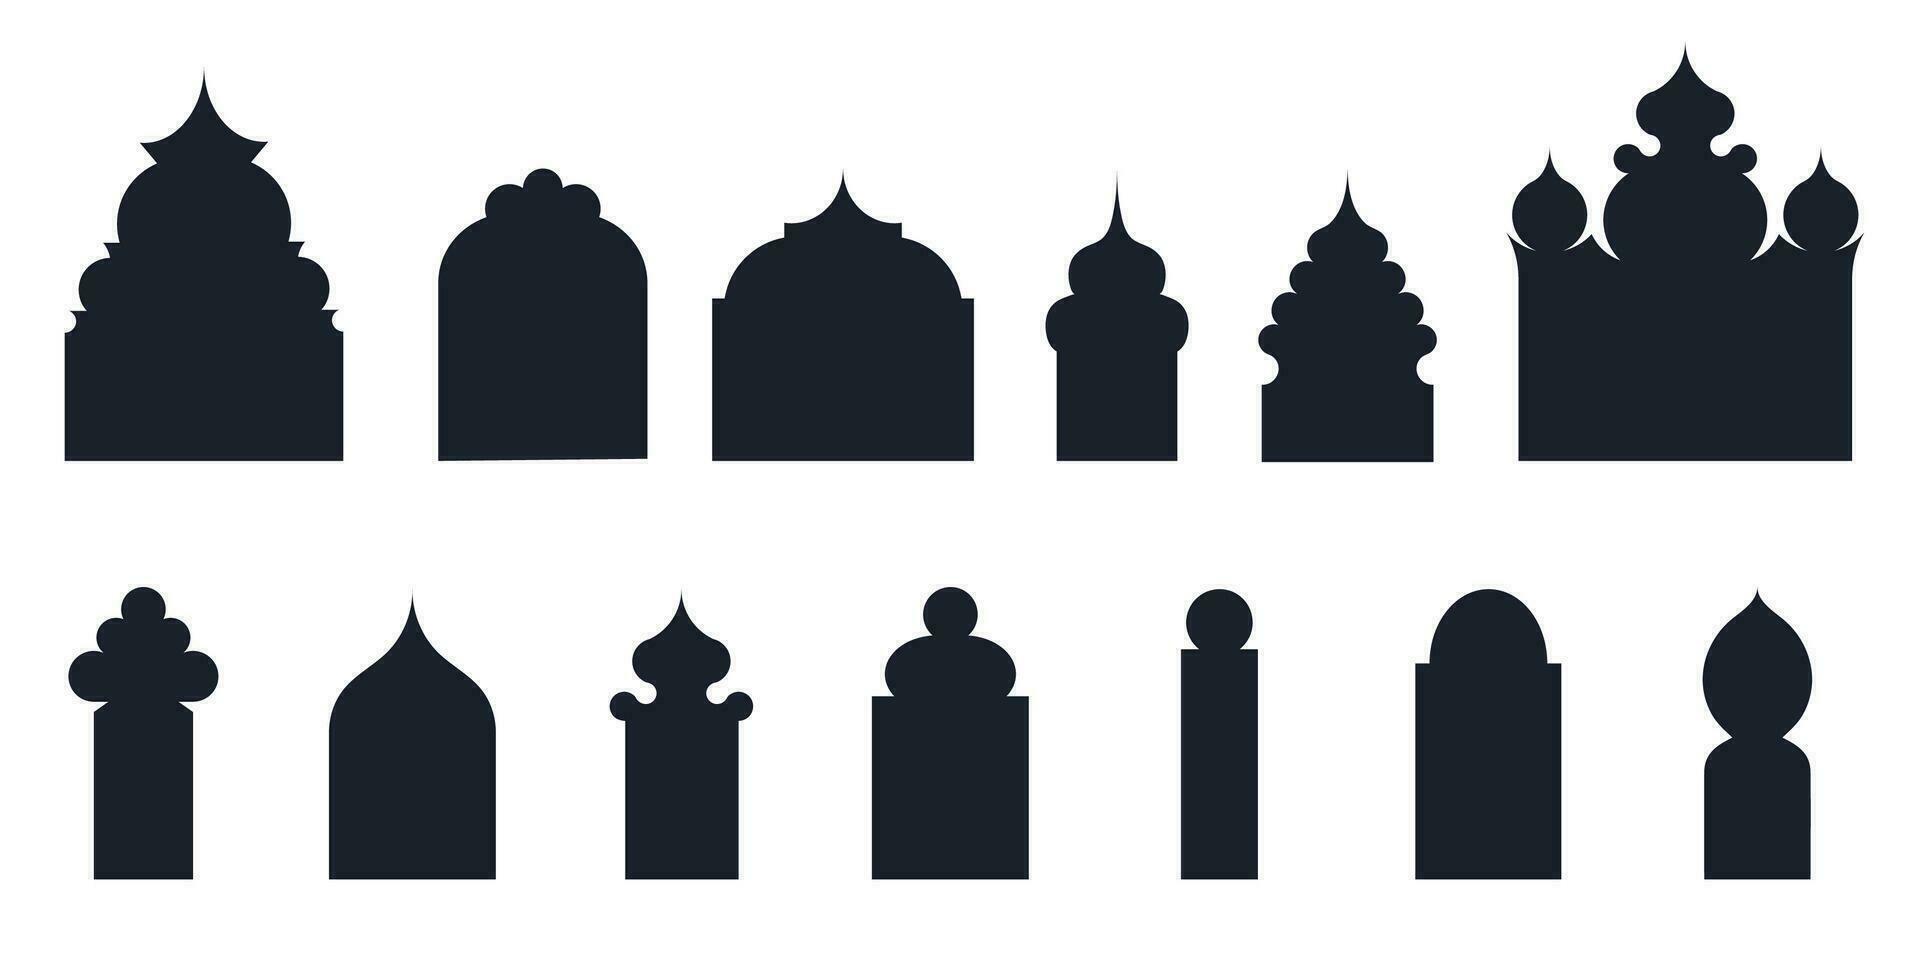 collection de arabe Oriental les fenêtres, arches et des portes. moderne conception dans noir pour cadres, motifs mosquée dôme et lanternes islamique Ramadan kareem et eid mubarak style. vecteur illustration